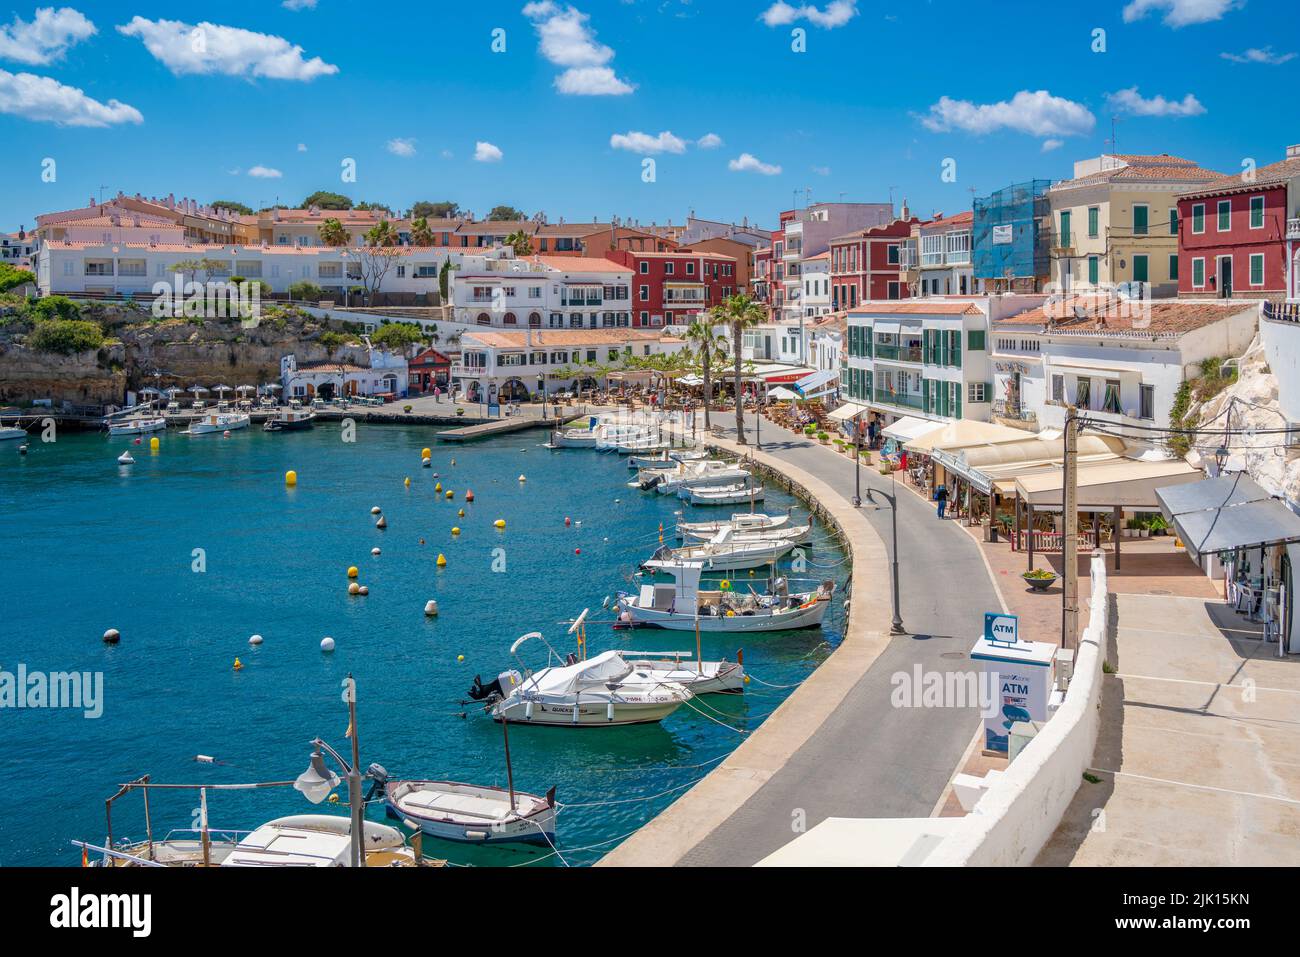 Vista de coloridos cafés, restaurantes y barcos en el puerto contra el cielo azul, Cales Fonts, Menorca, Islas Baleares, España, Mediterráneo, Europa Foto de stock